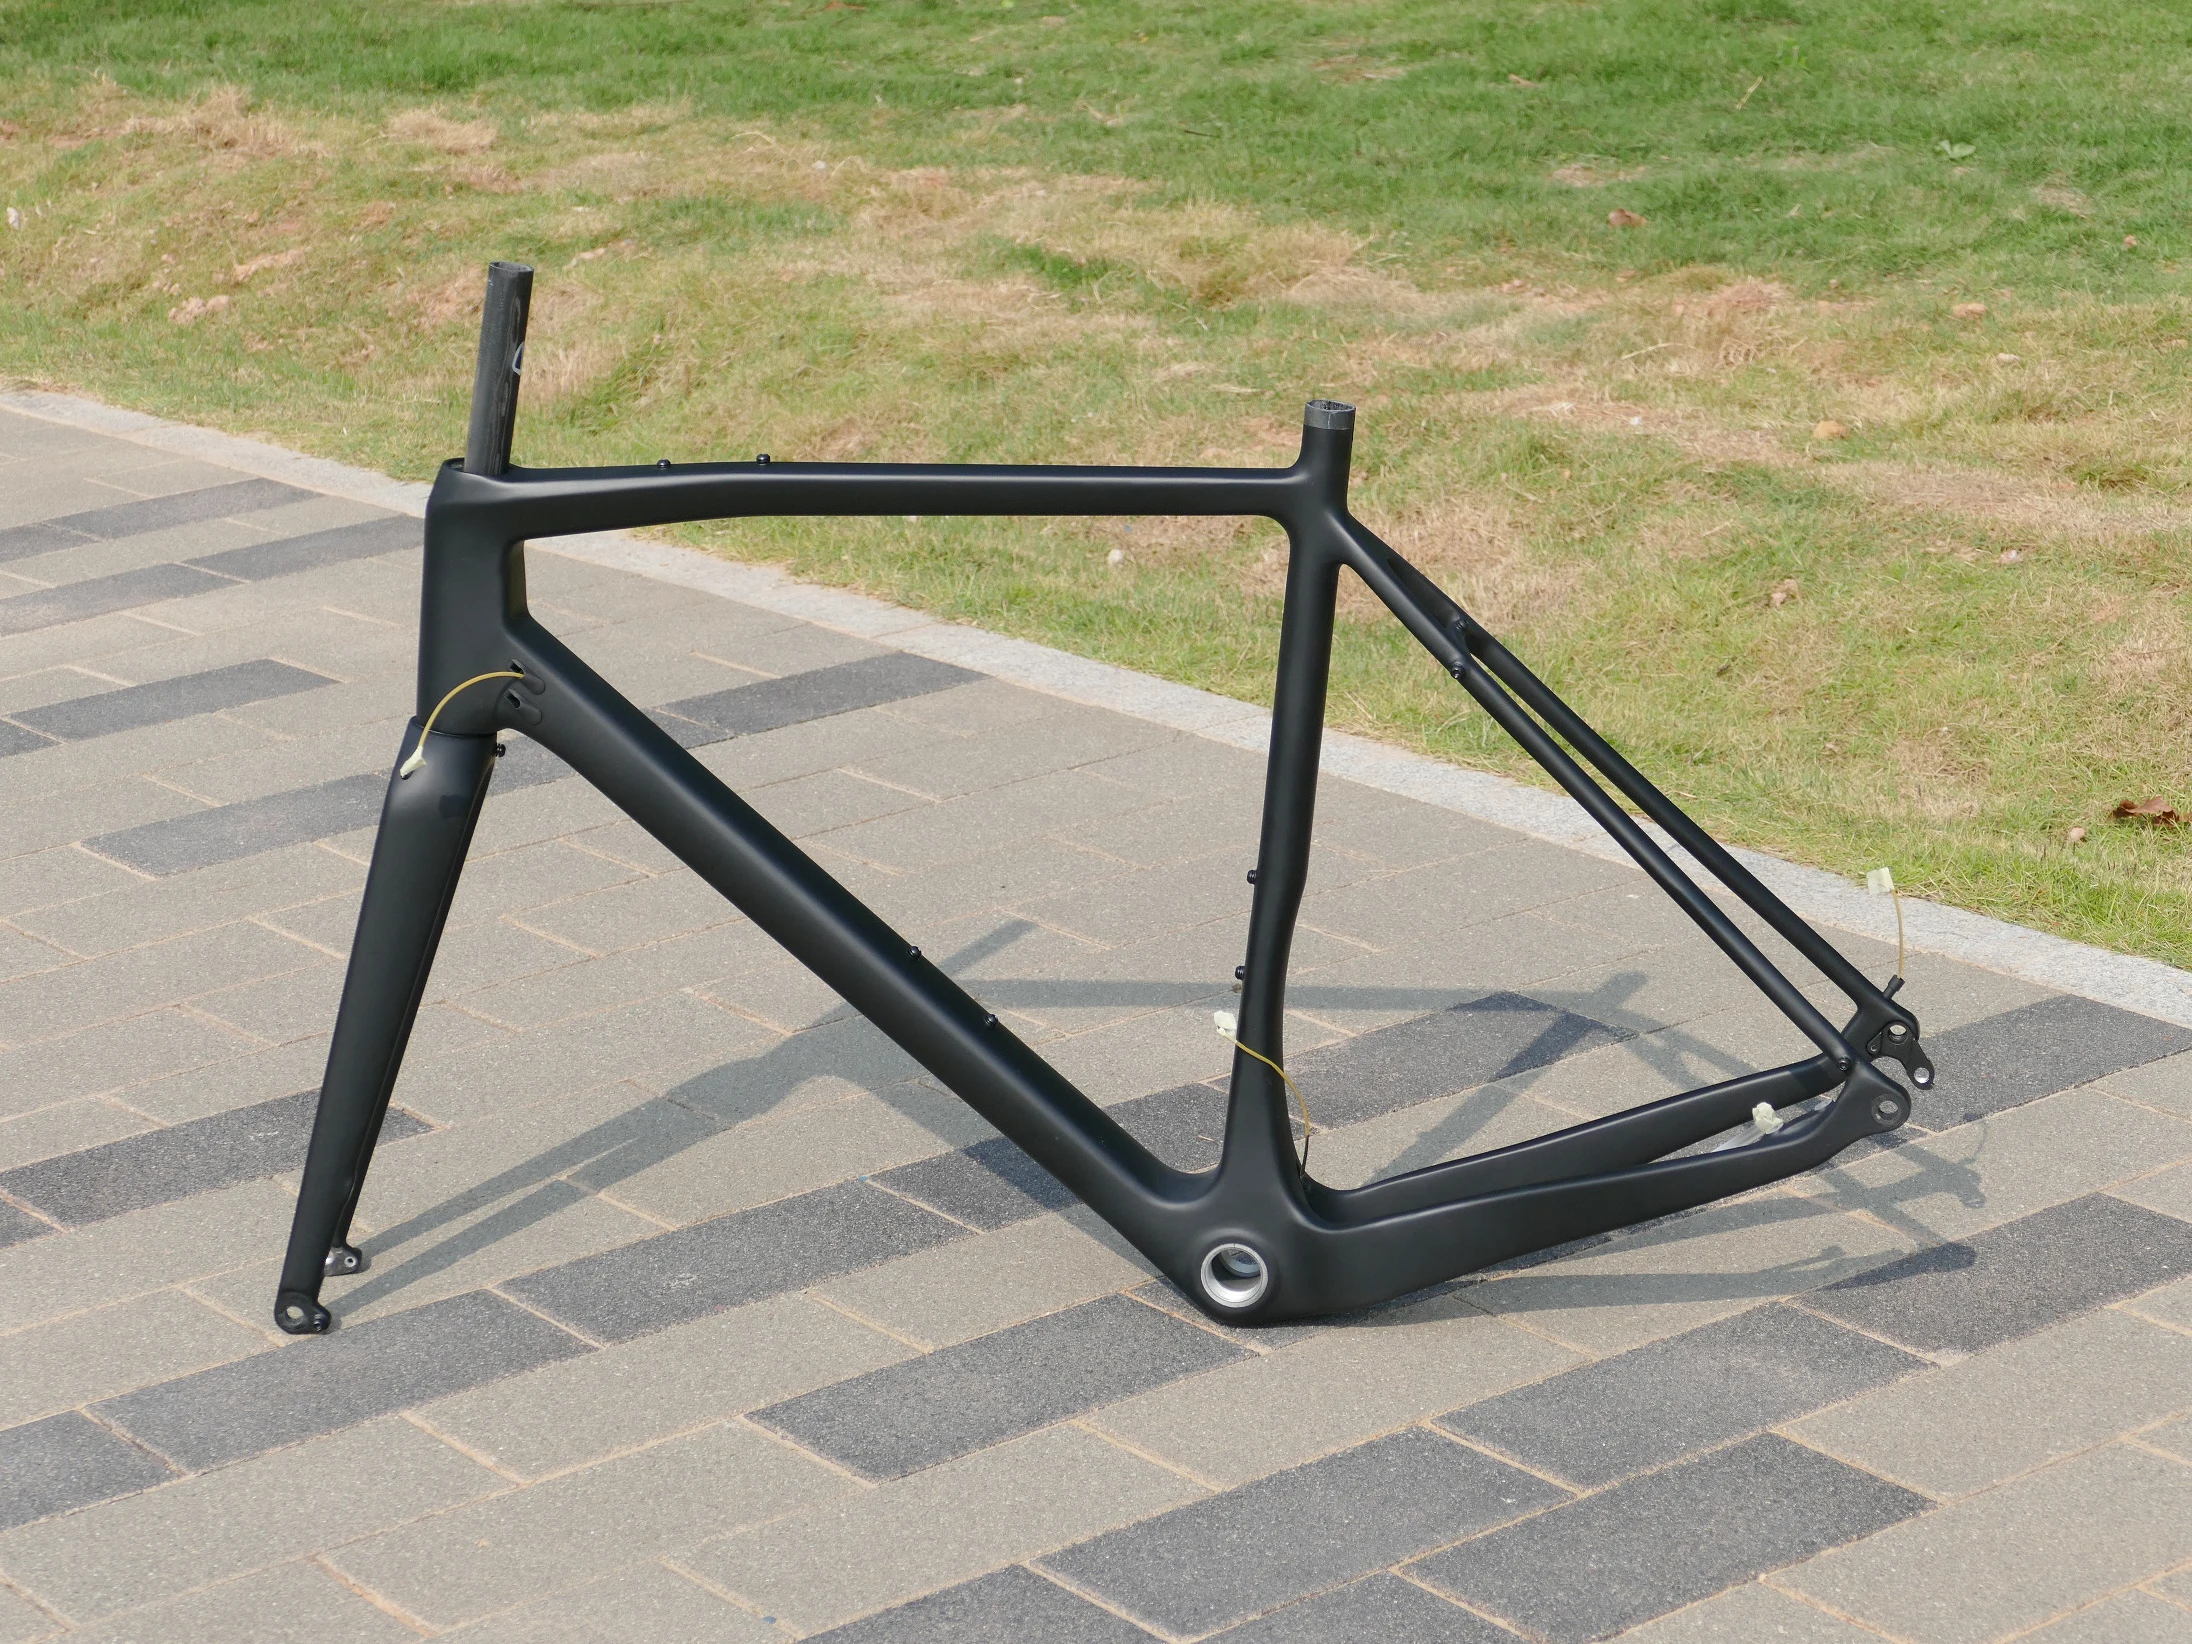 Cuadro de carbono UD para bicicleta, marco de grava de 46/49/52/54/56/58/61cm, con freno de disco de eje pasante, color negro mate, novedad